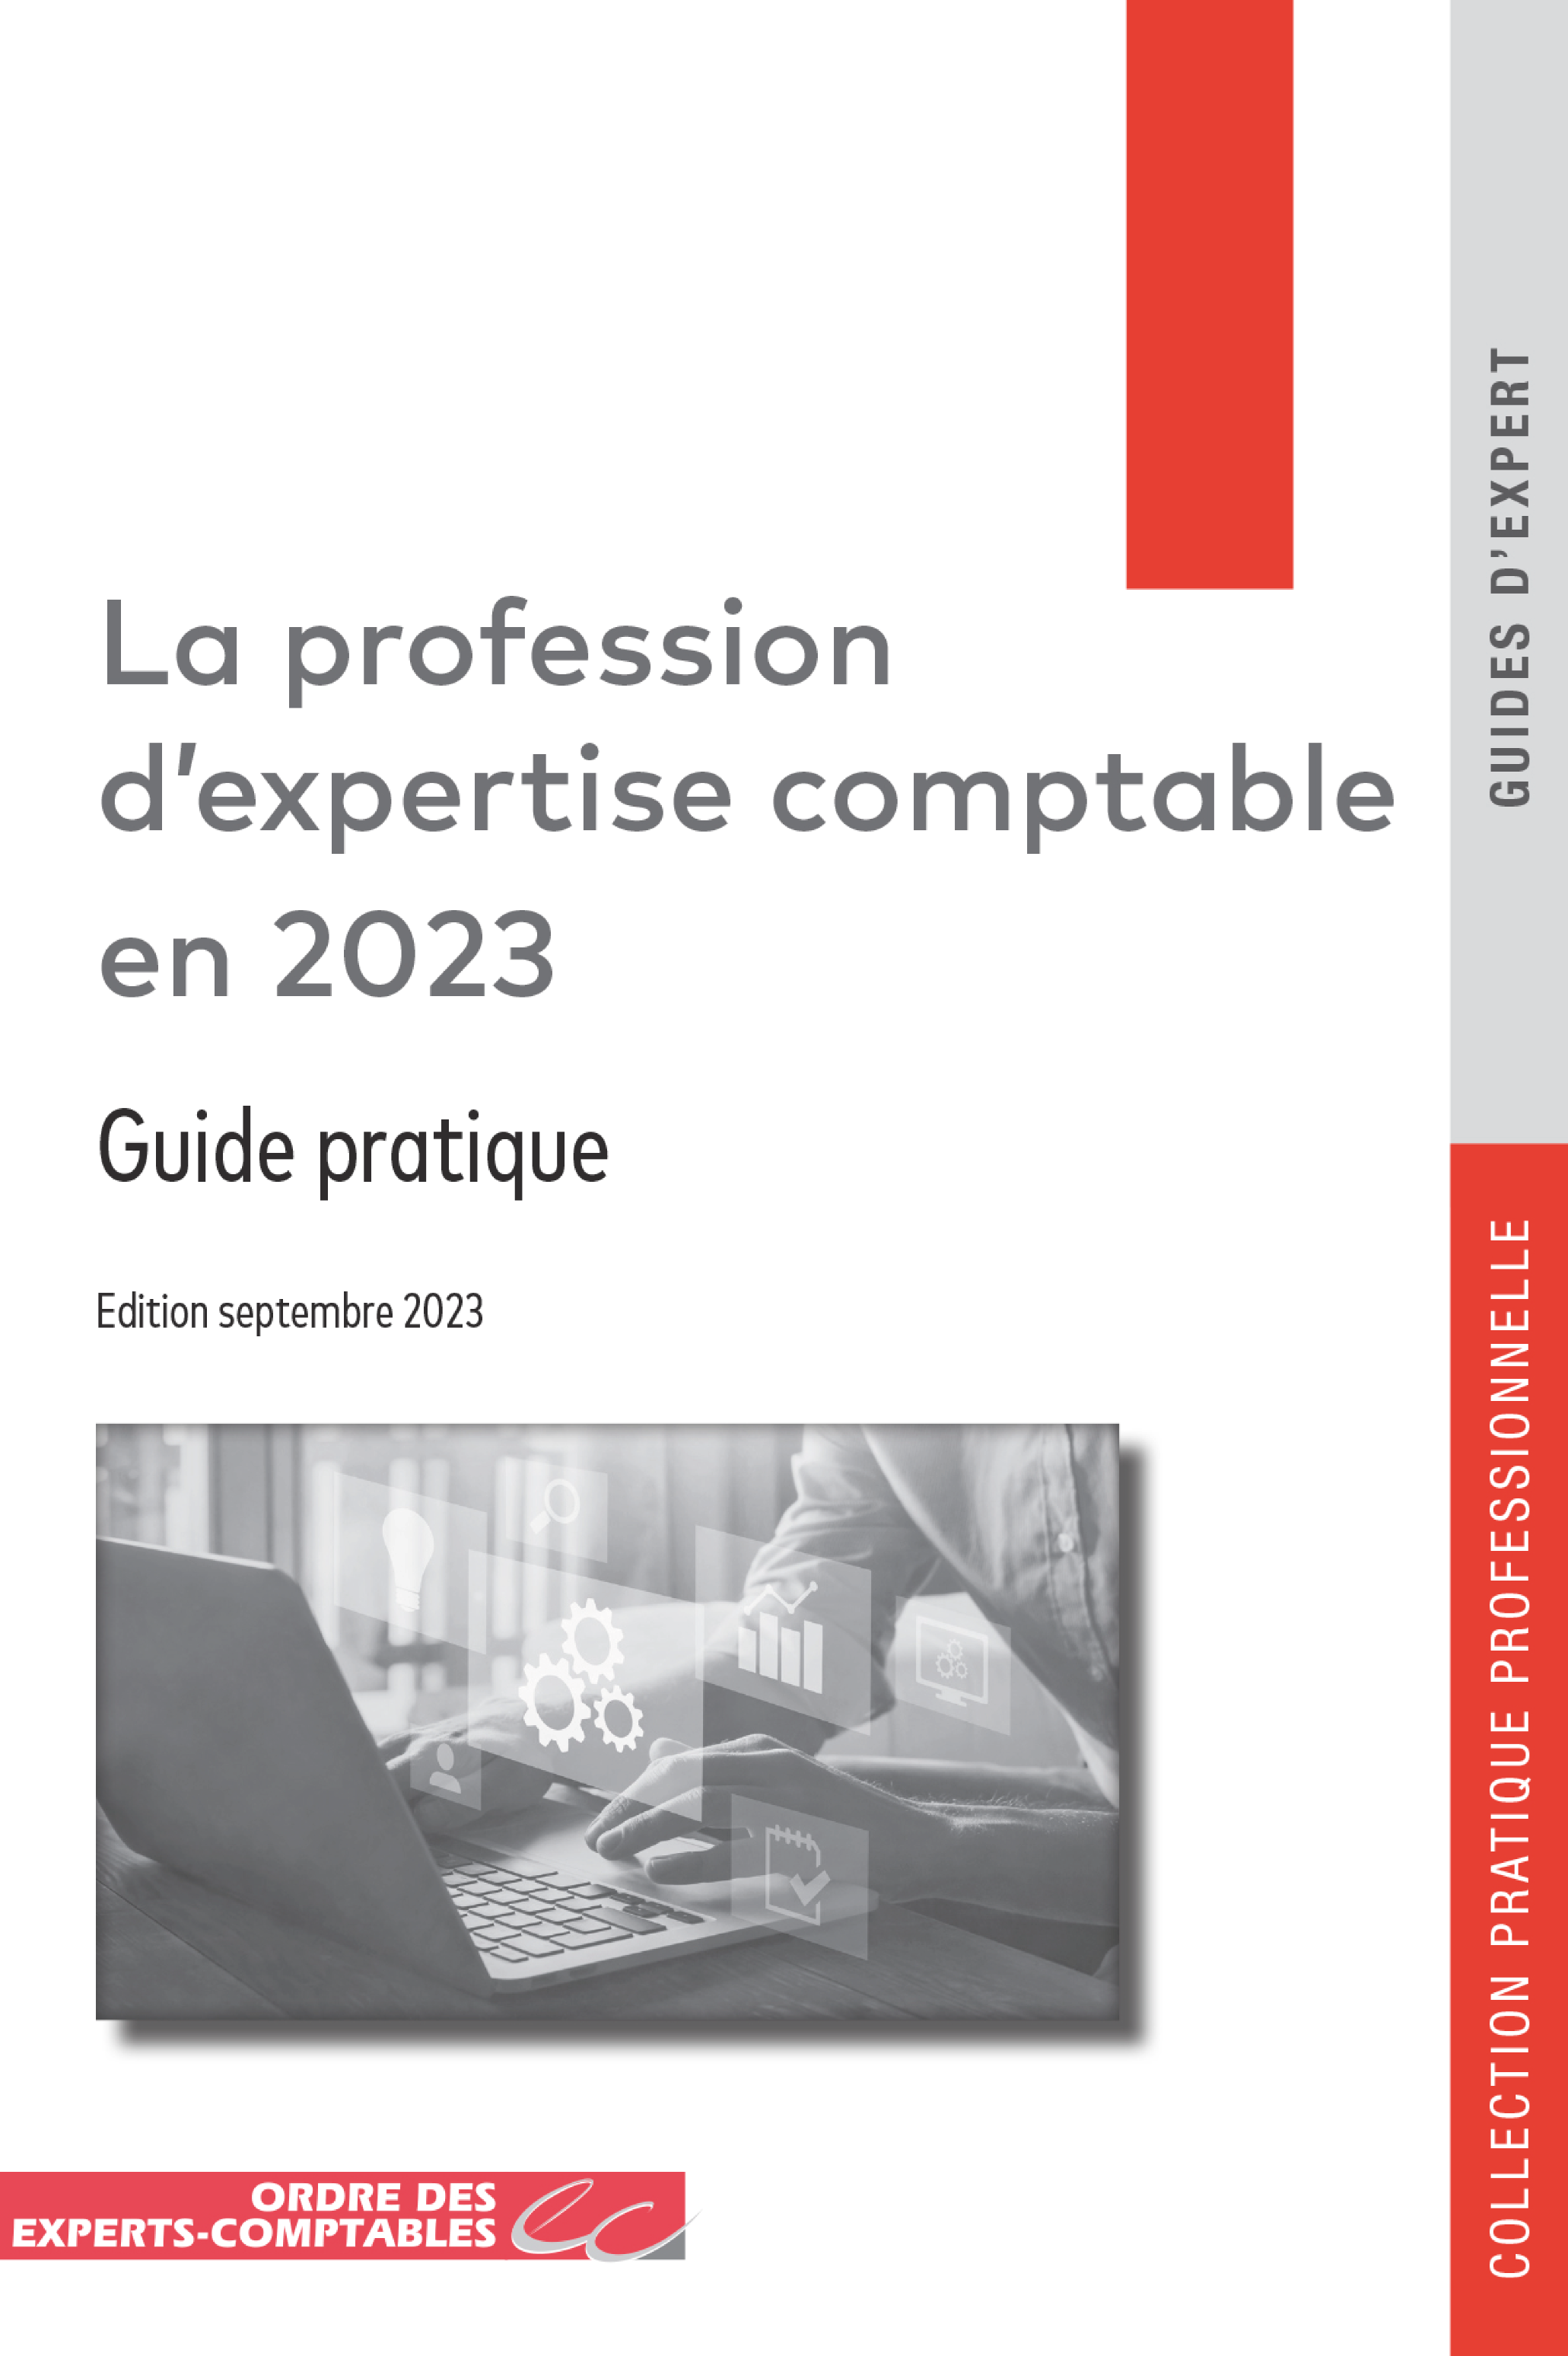 La profession d’expertise comptable en 2023